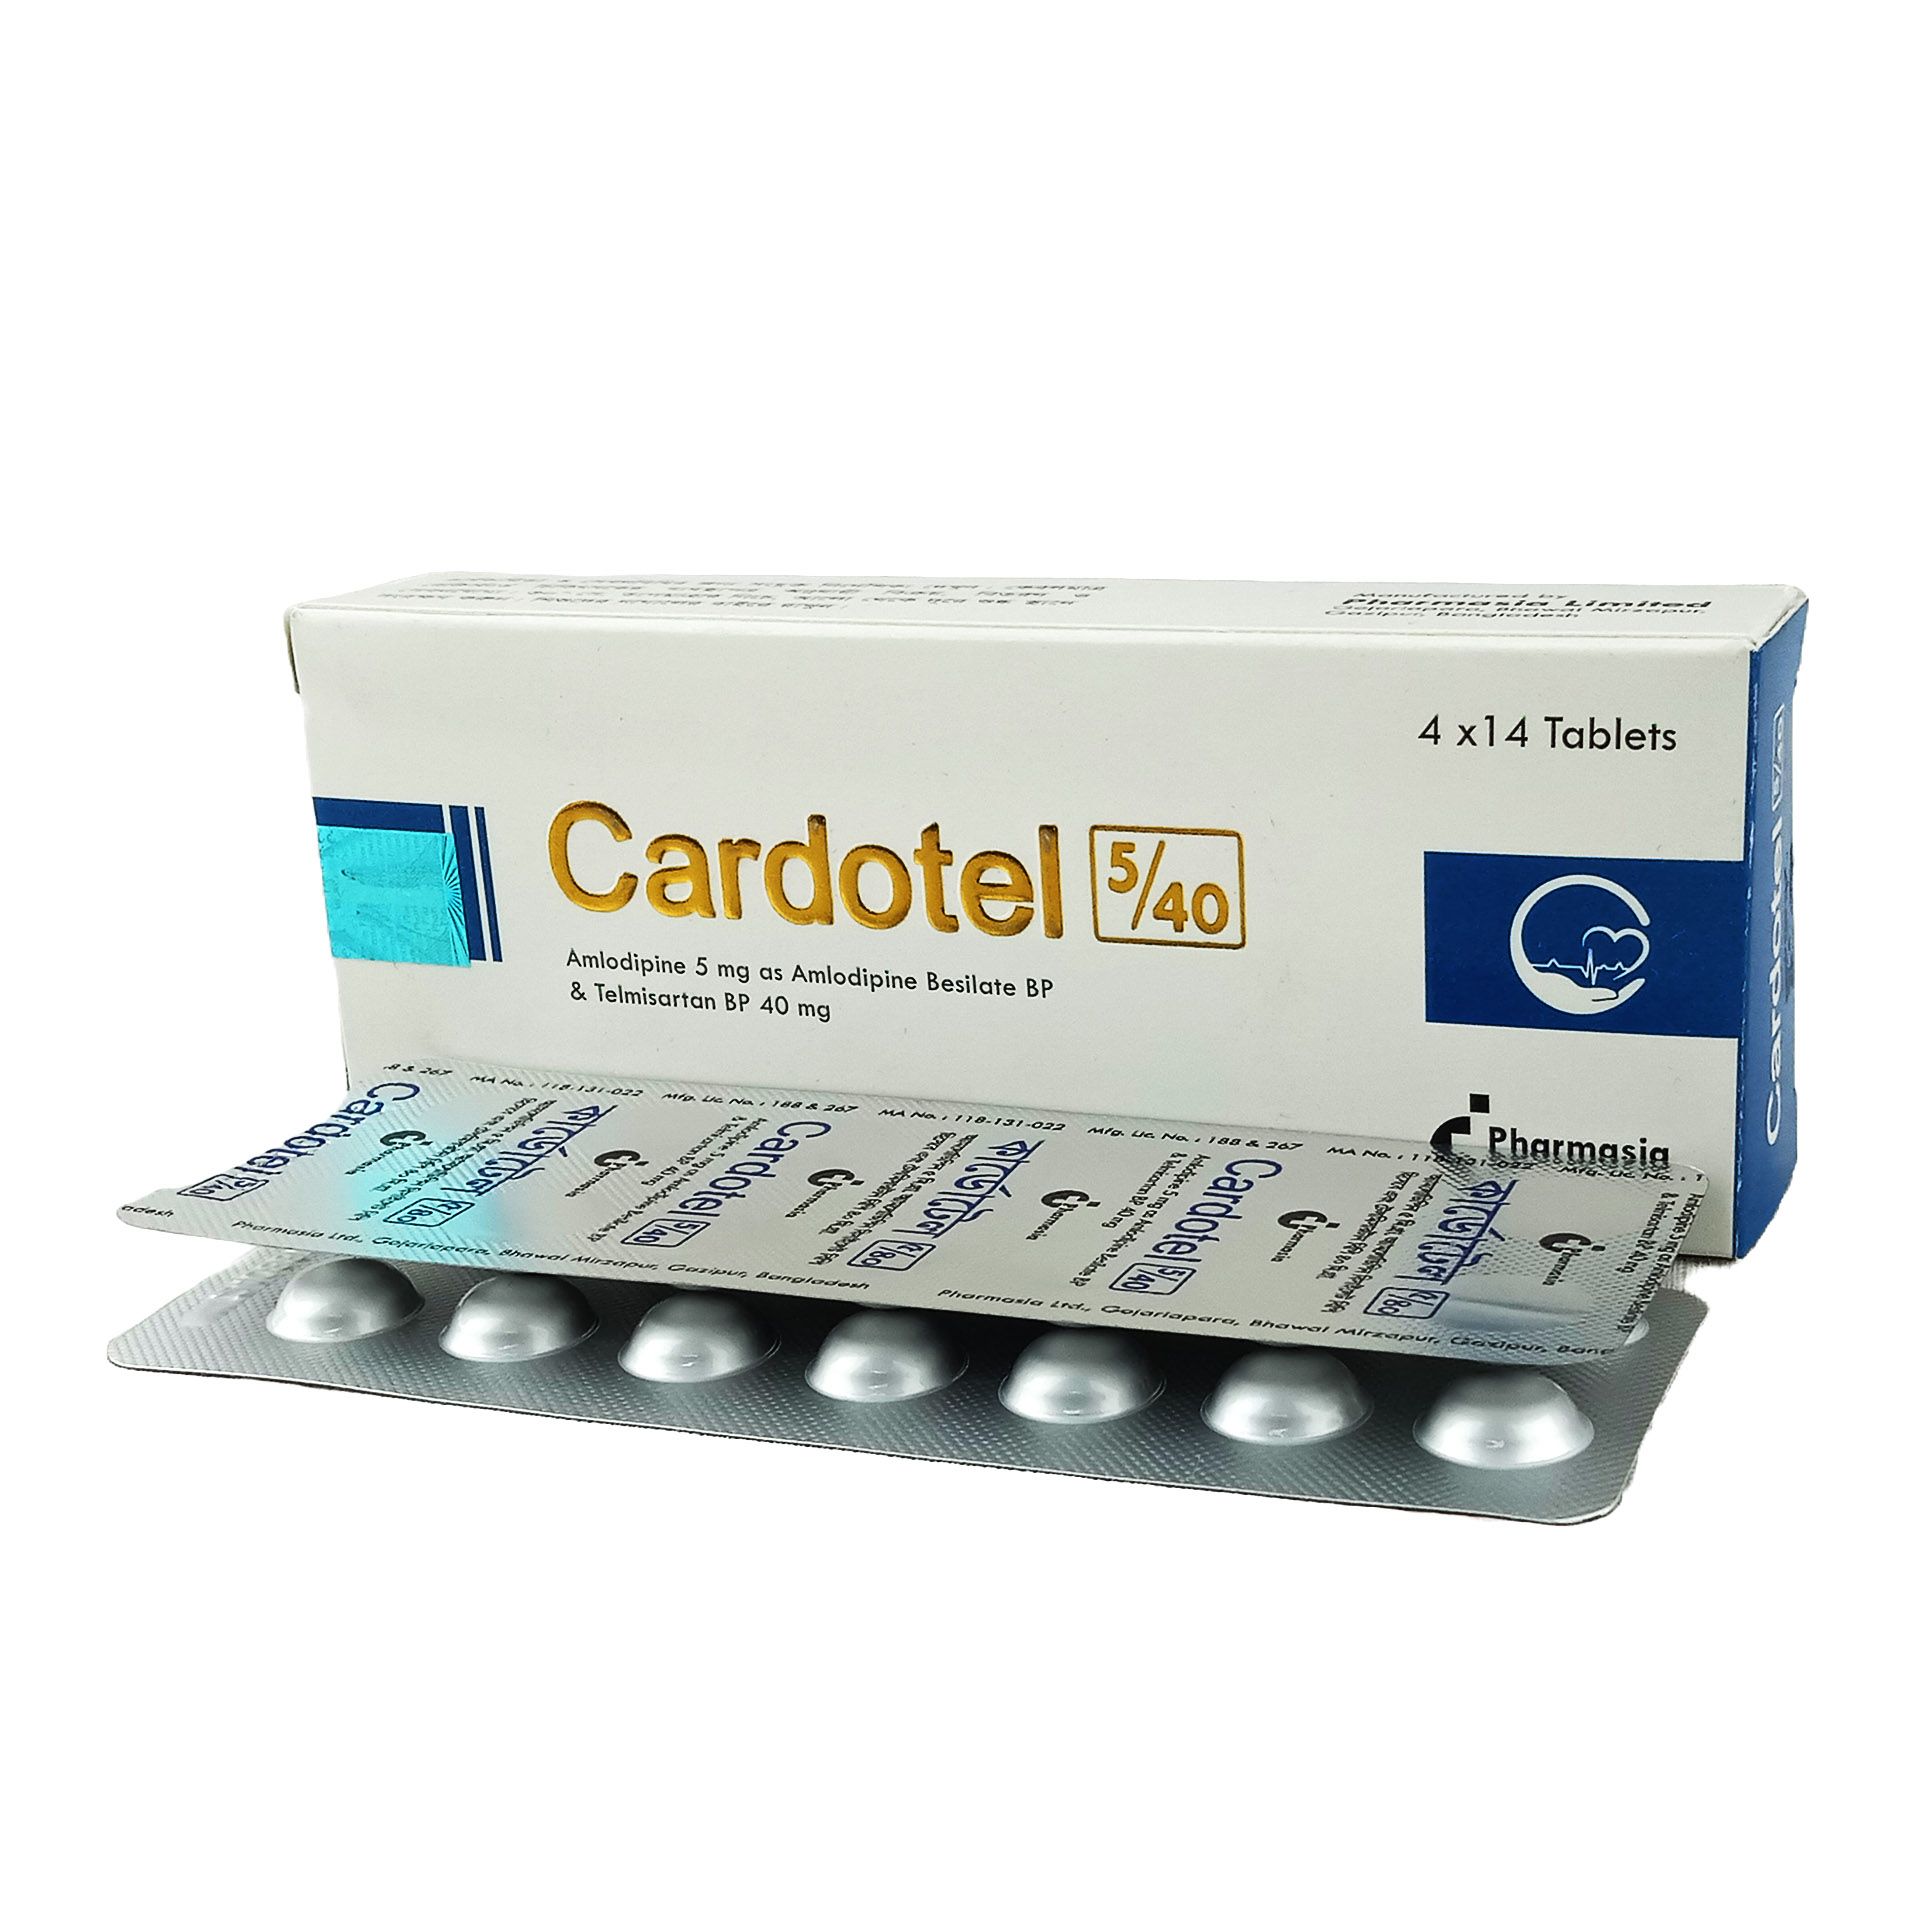 Cardotel 5/40 5mg+40mg Tablet